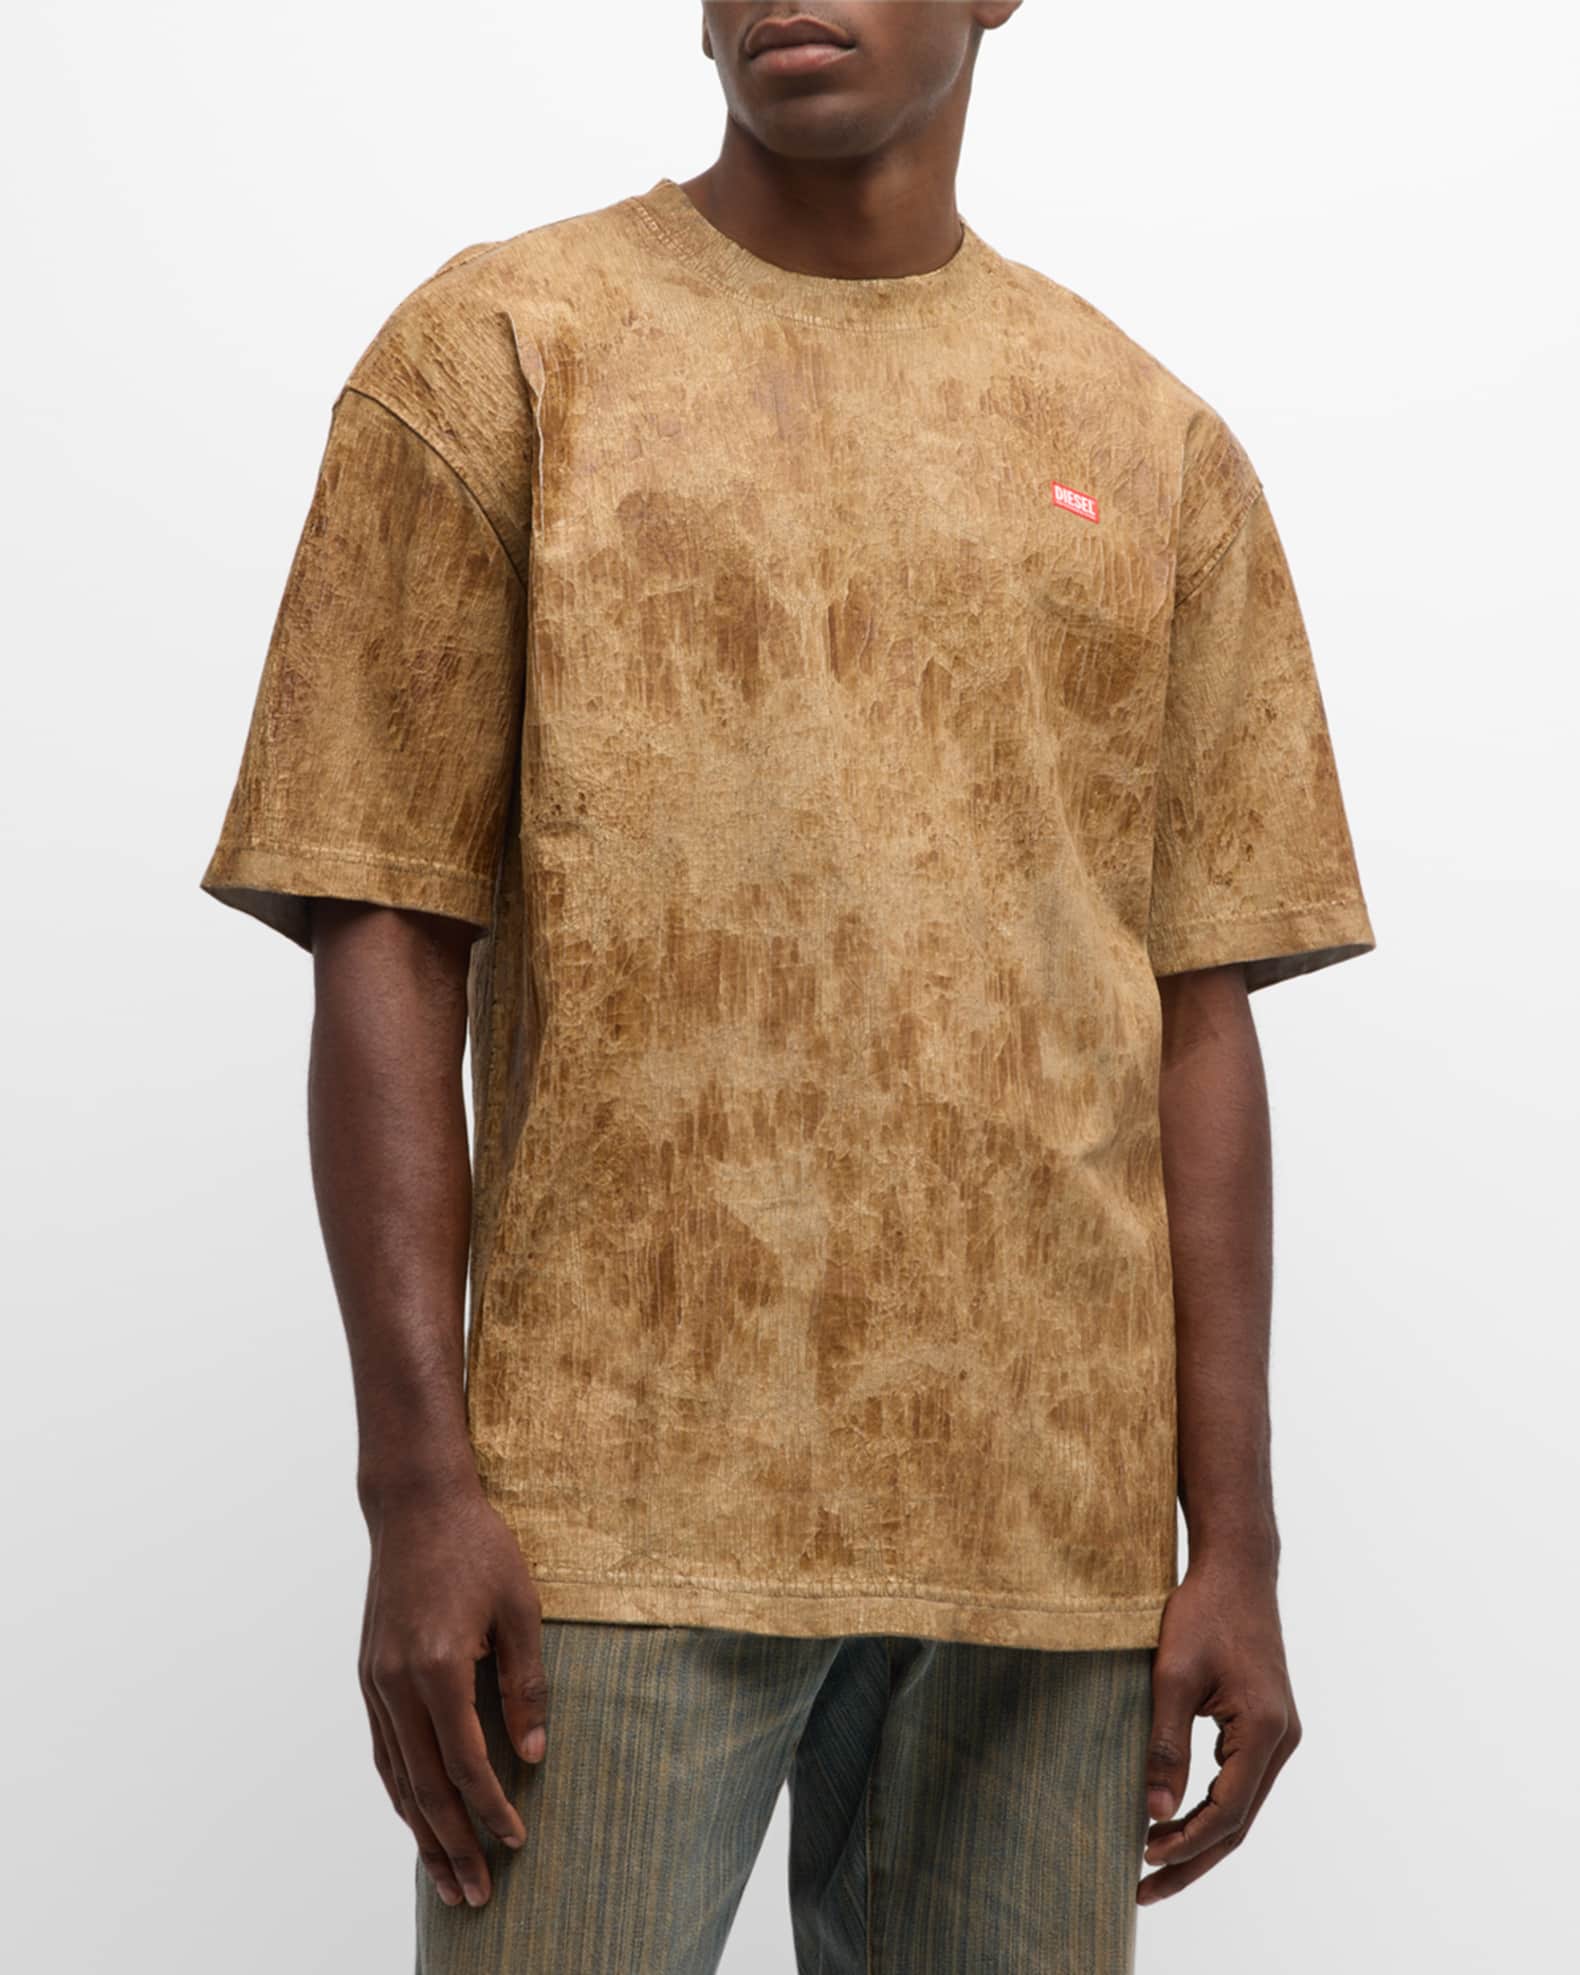 Louis Vuitton tie dye 3D T-Shirt - LIMITED EDITION